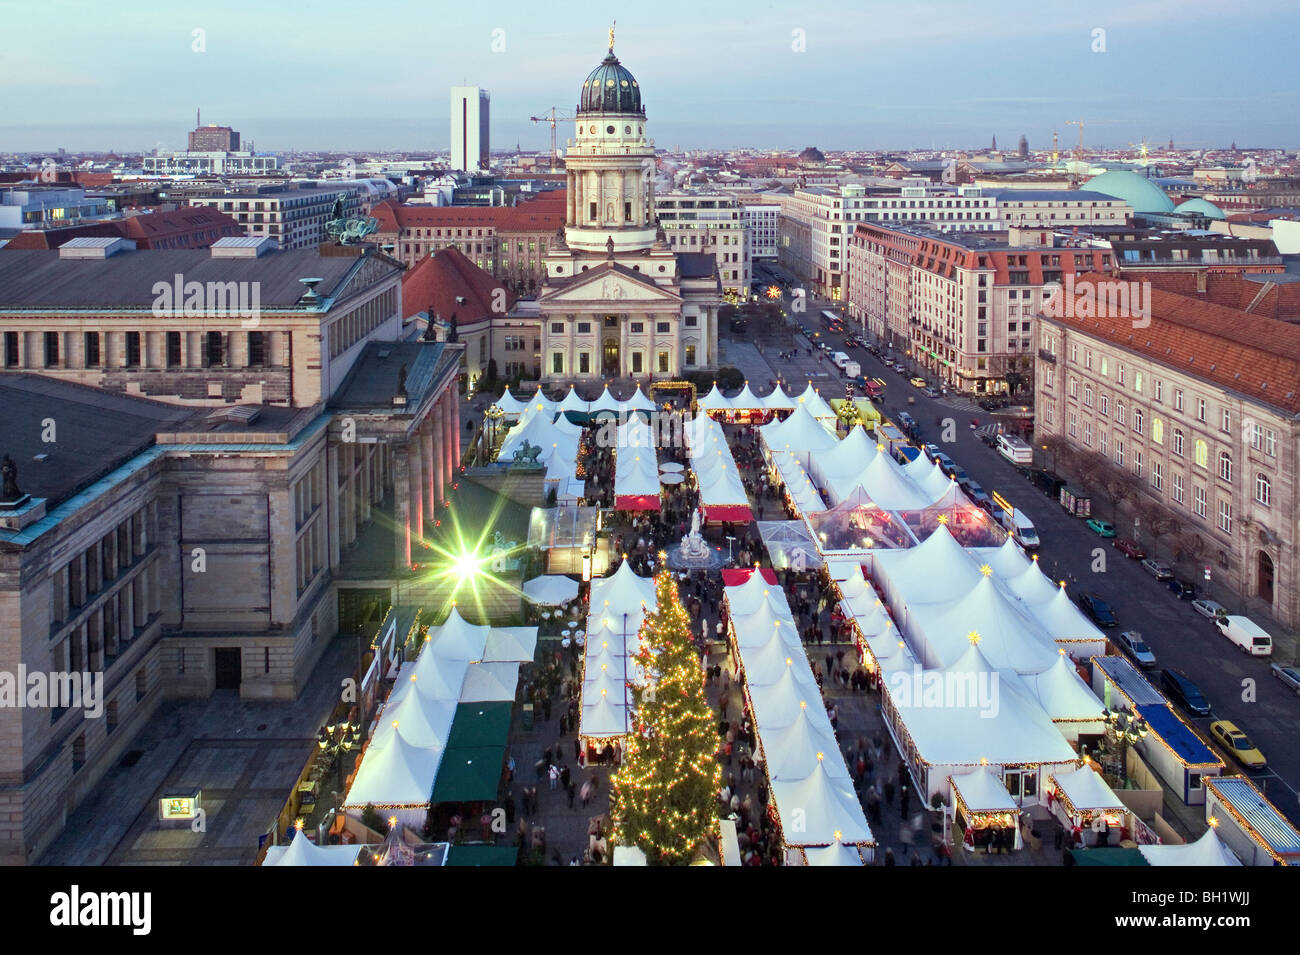 Weihnachtsmarkt, Franzoesischer Dom, Gendarmenmarkt, Berlin, Deutschland Stockfoto